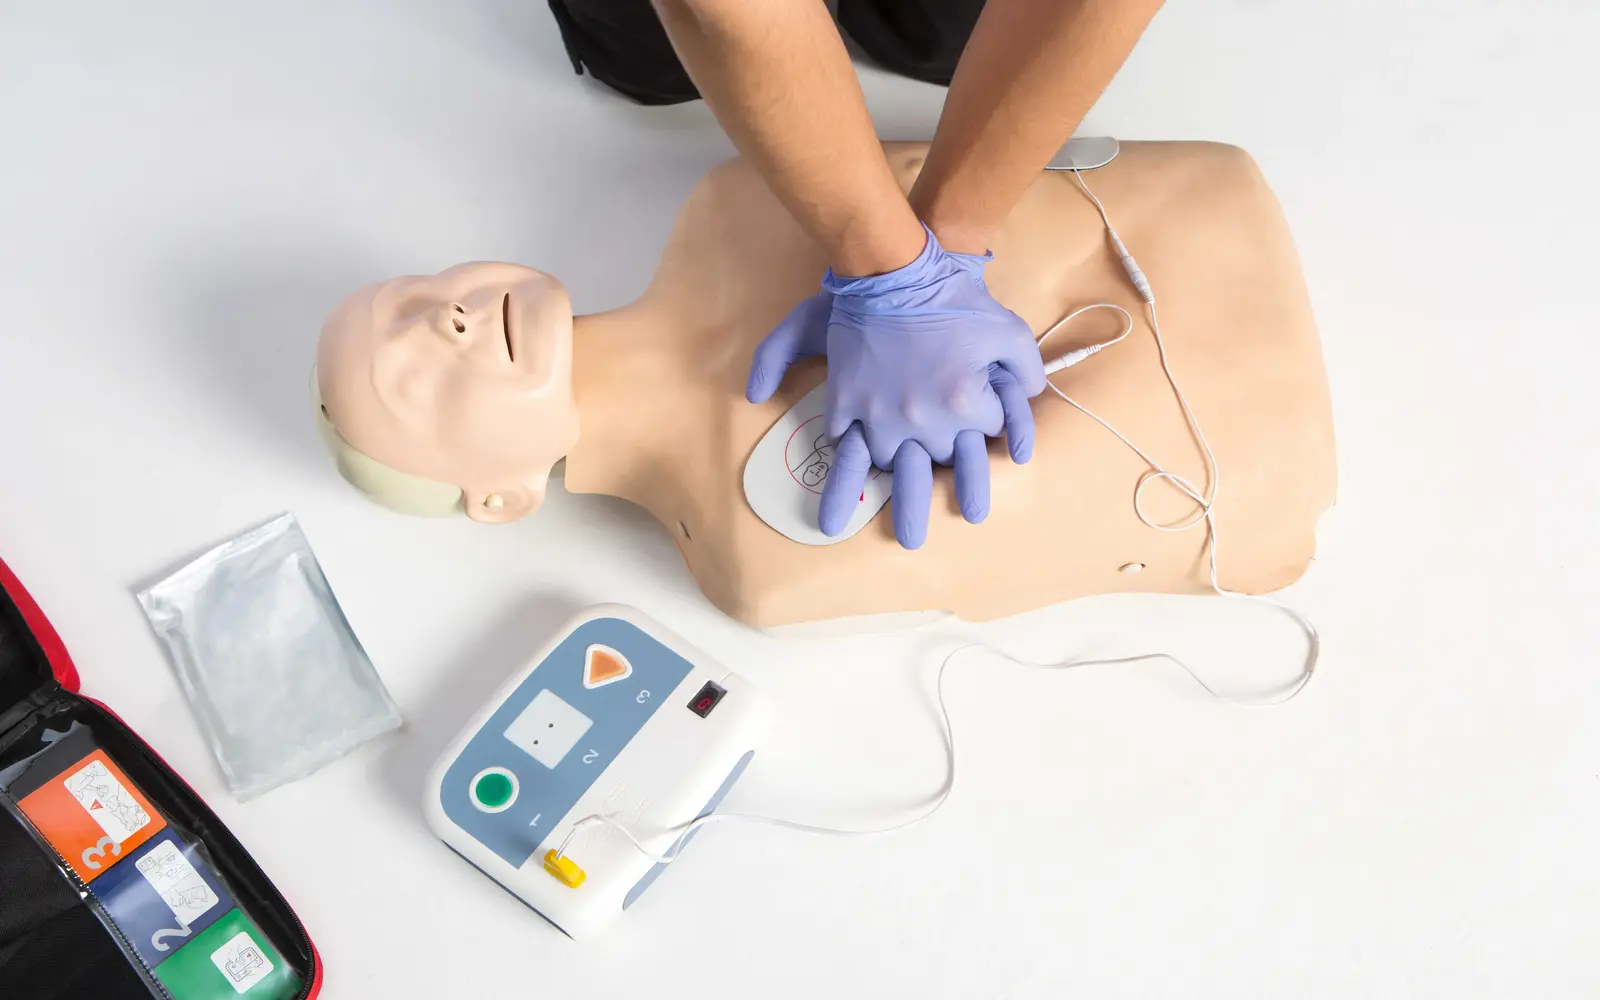 kurs BLS AED szkolenie resuscytacji szkolenia z pierwszej pomocy kursy pierwszej pomocy dla firm safety4all 1600x1000